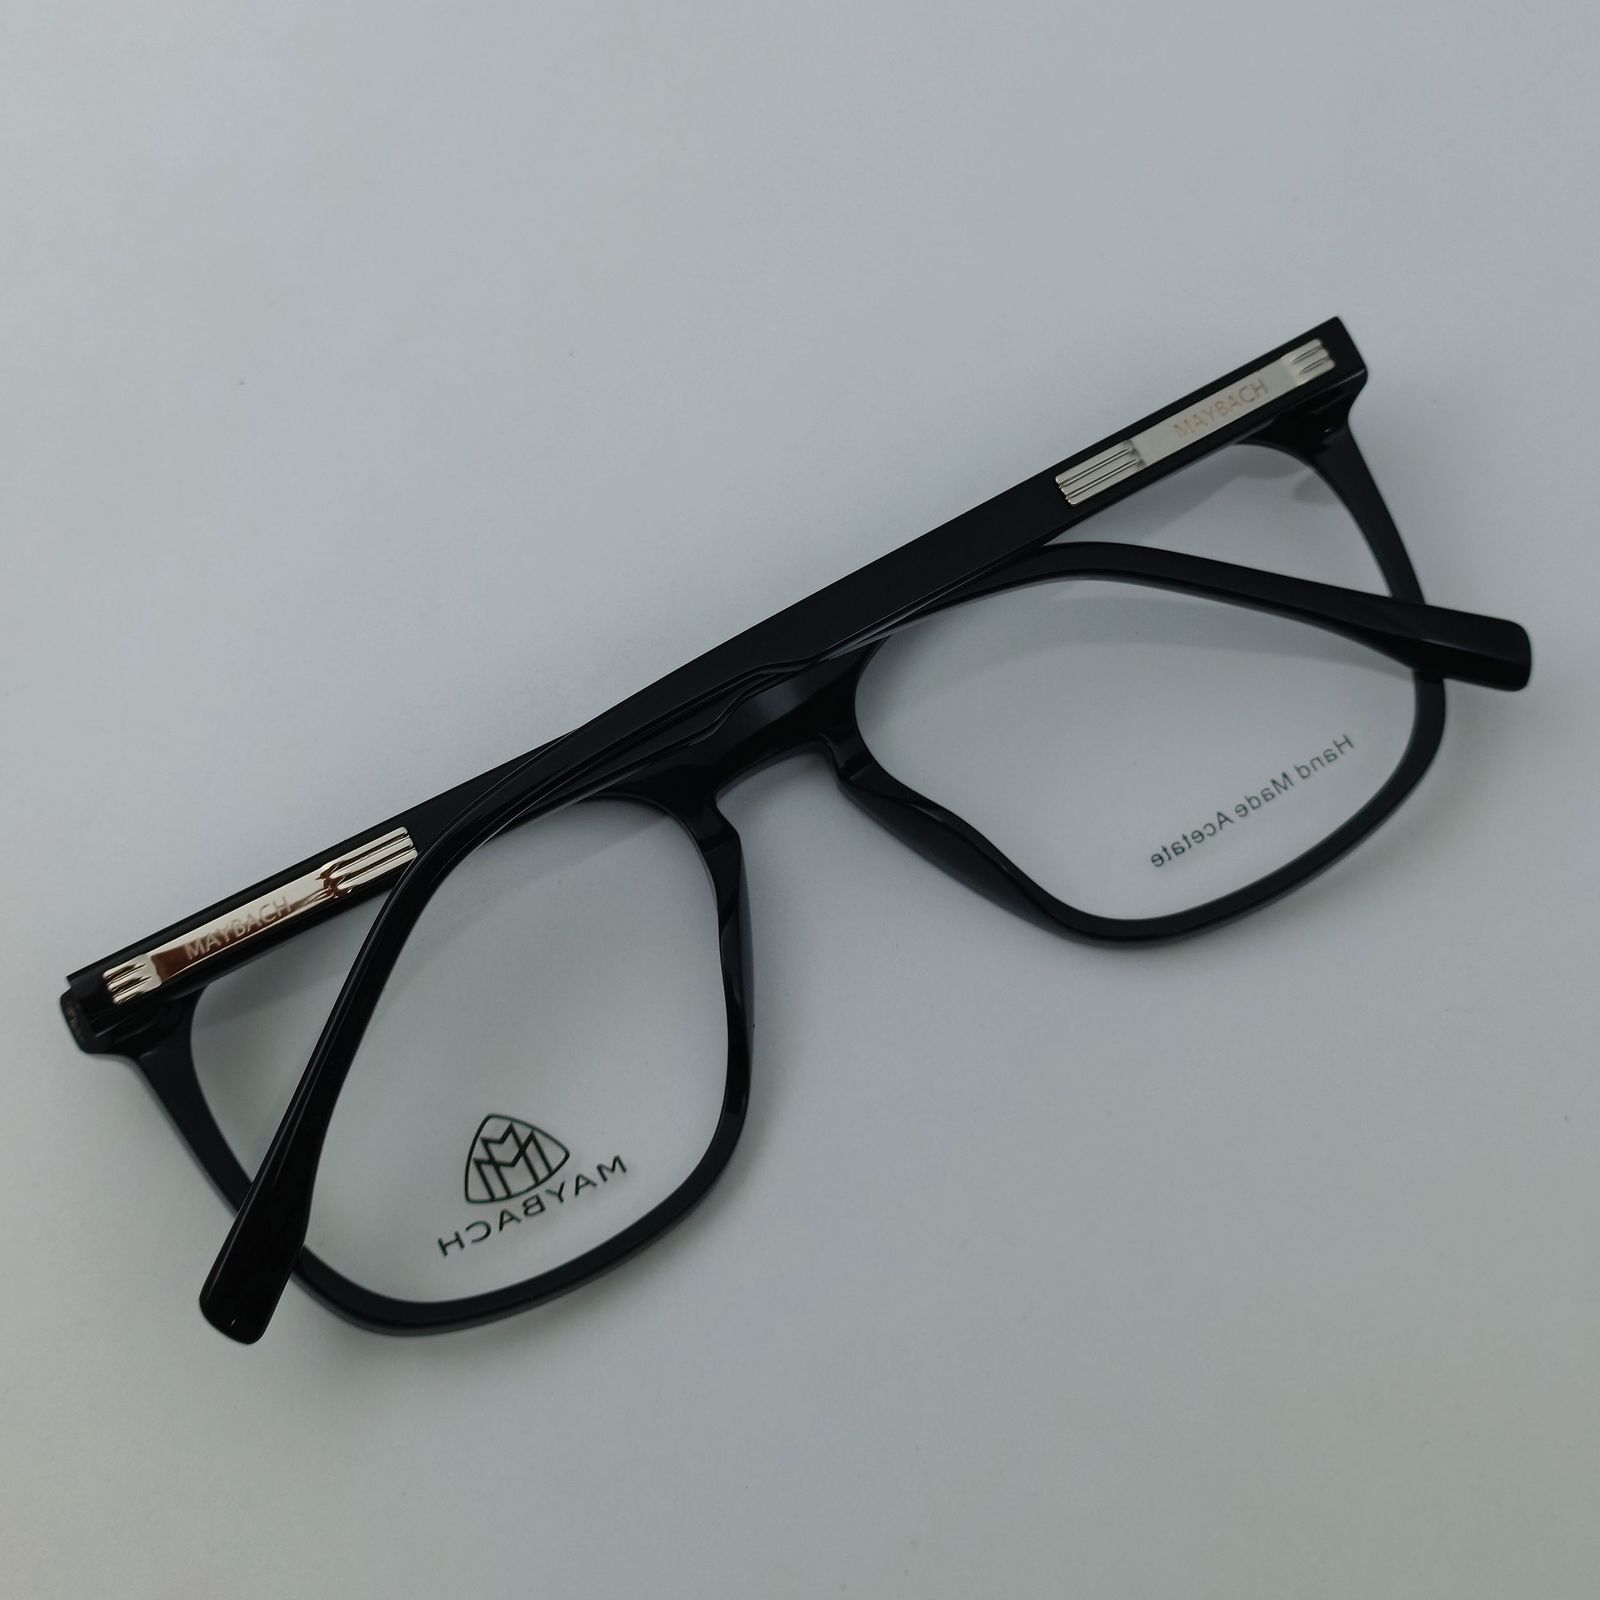 فریم عینک طبی میباخ مدل 6504 C1 -  - 10